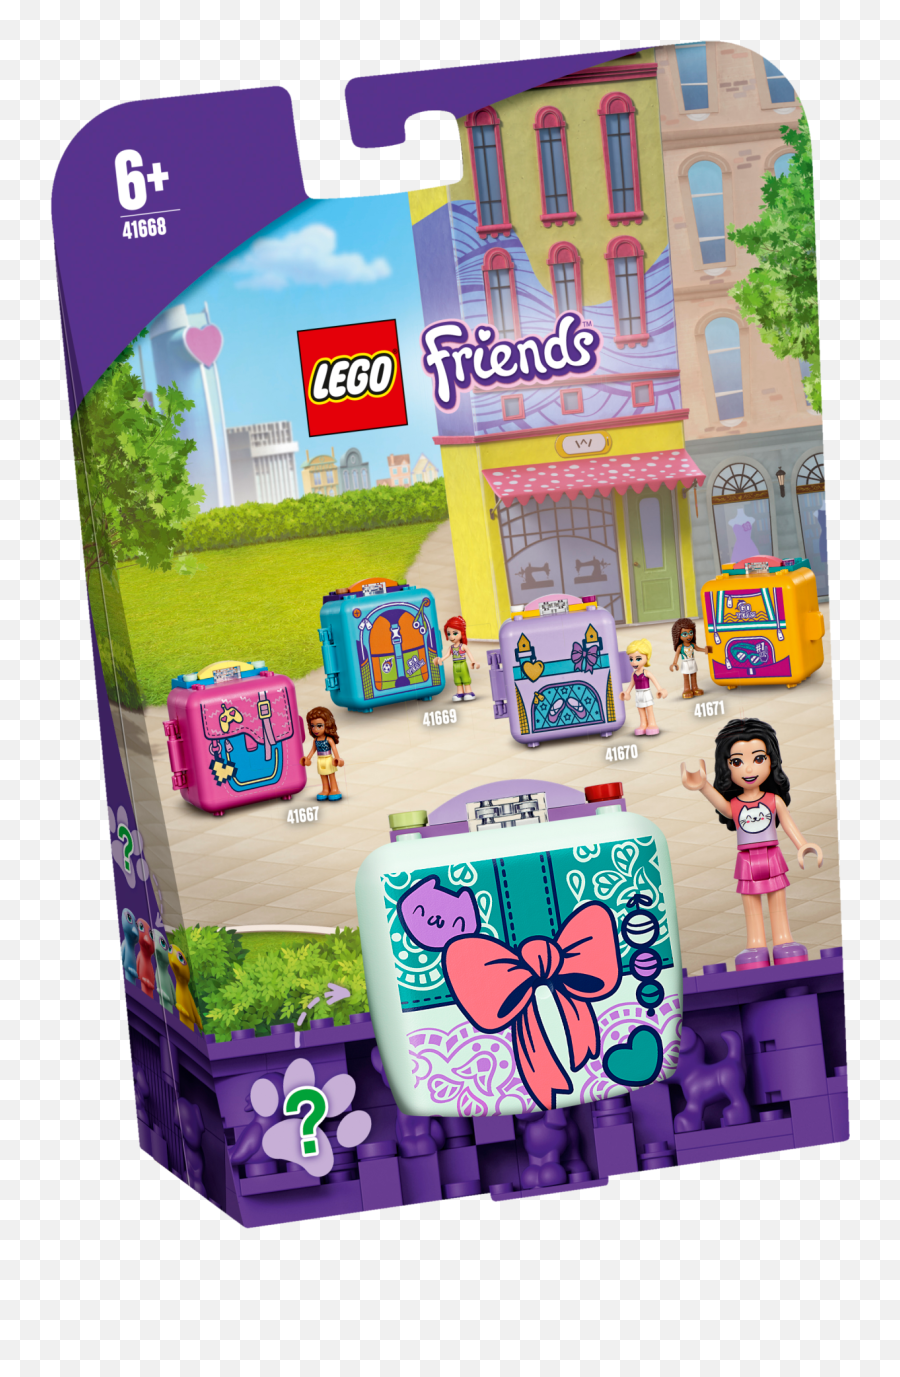 Emmau0027s Fashion Cube 41668 - Lego Friends Sets Legocom Emoji,Alien And 5 And 1 Guess The Emoji